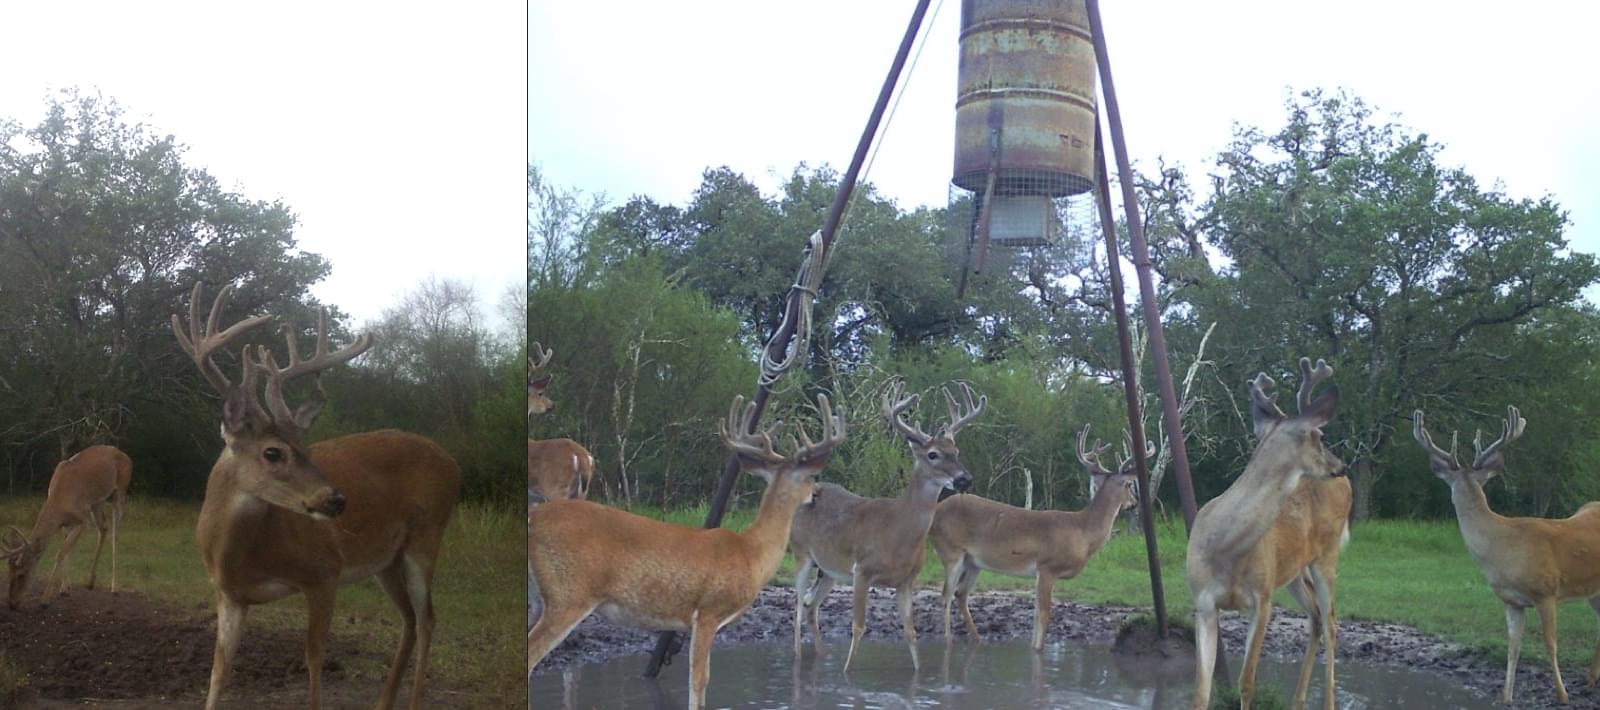 South Texas Free Range Whitetail Deer Hunting